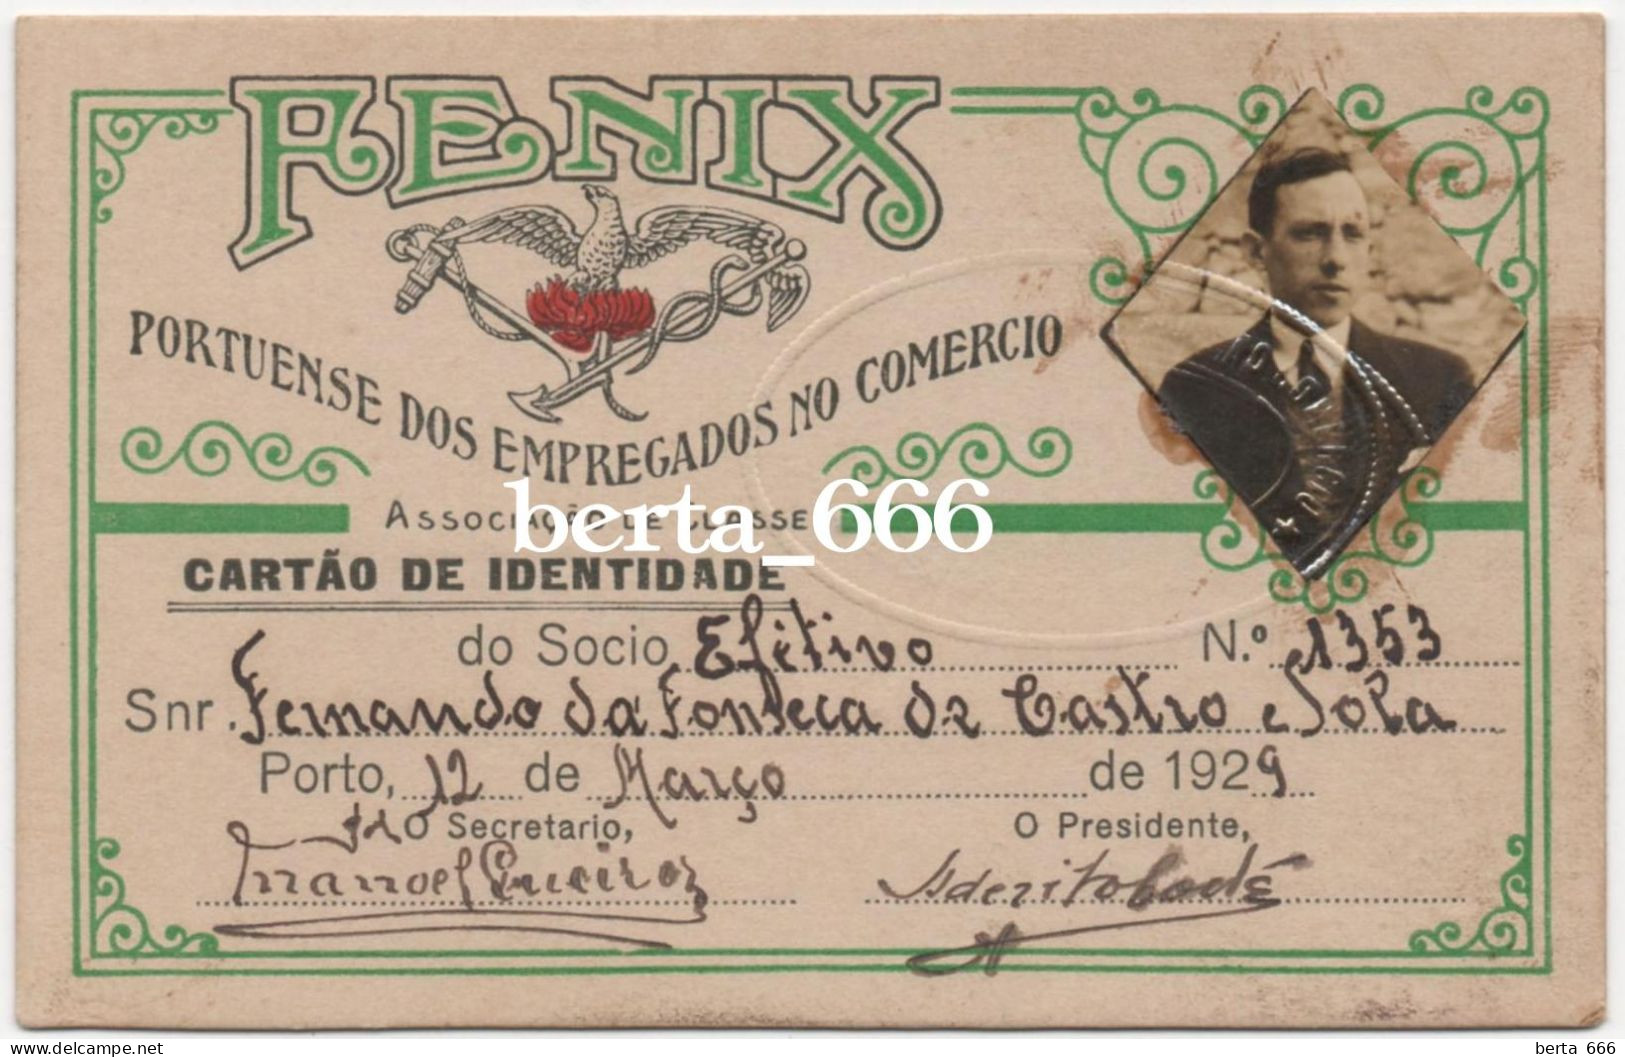 FENIX Associação Portuense Dos Empregados No Comércio * Cartão De Identidade De Sócio * 1929 - Cartes De Membre